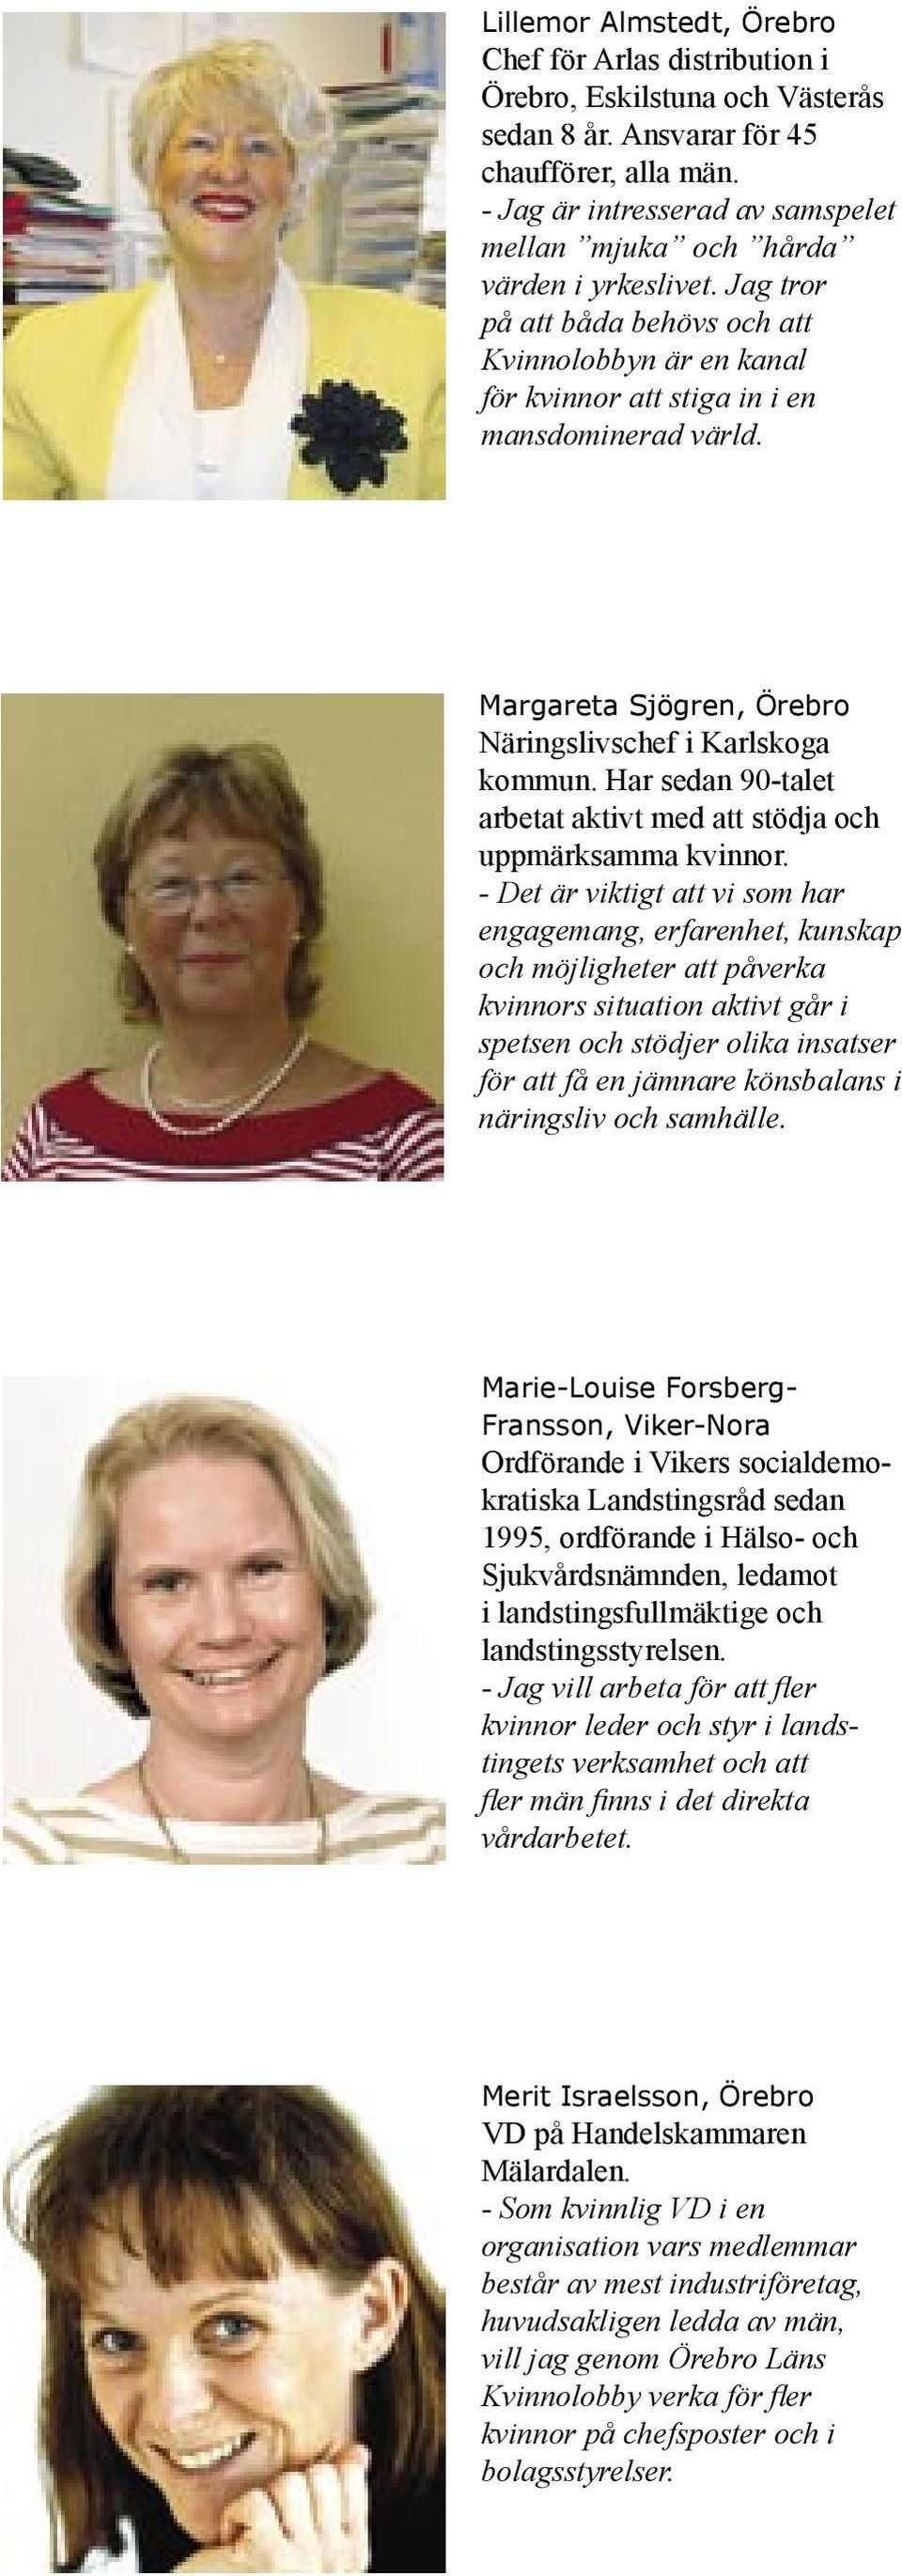 Margareta Sjögren, Örebro Näringslivschef i Karlskoga kommun. Har sedan 90-talet arbetat aktivt med att stödja och uppmärksamma kvinnor.